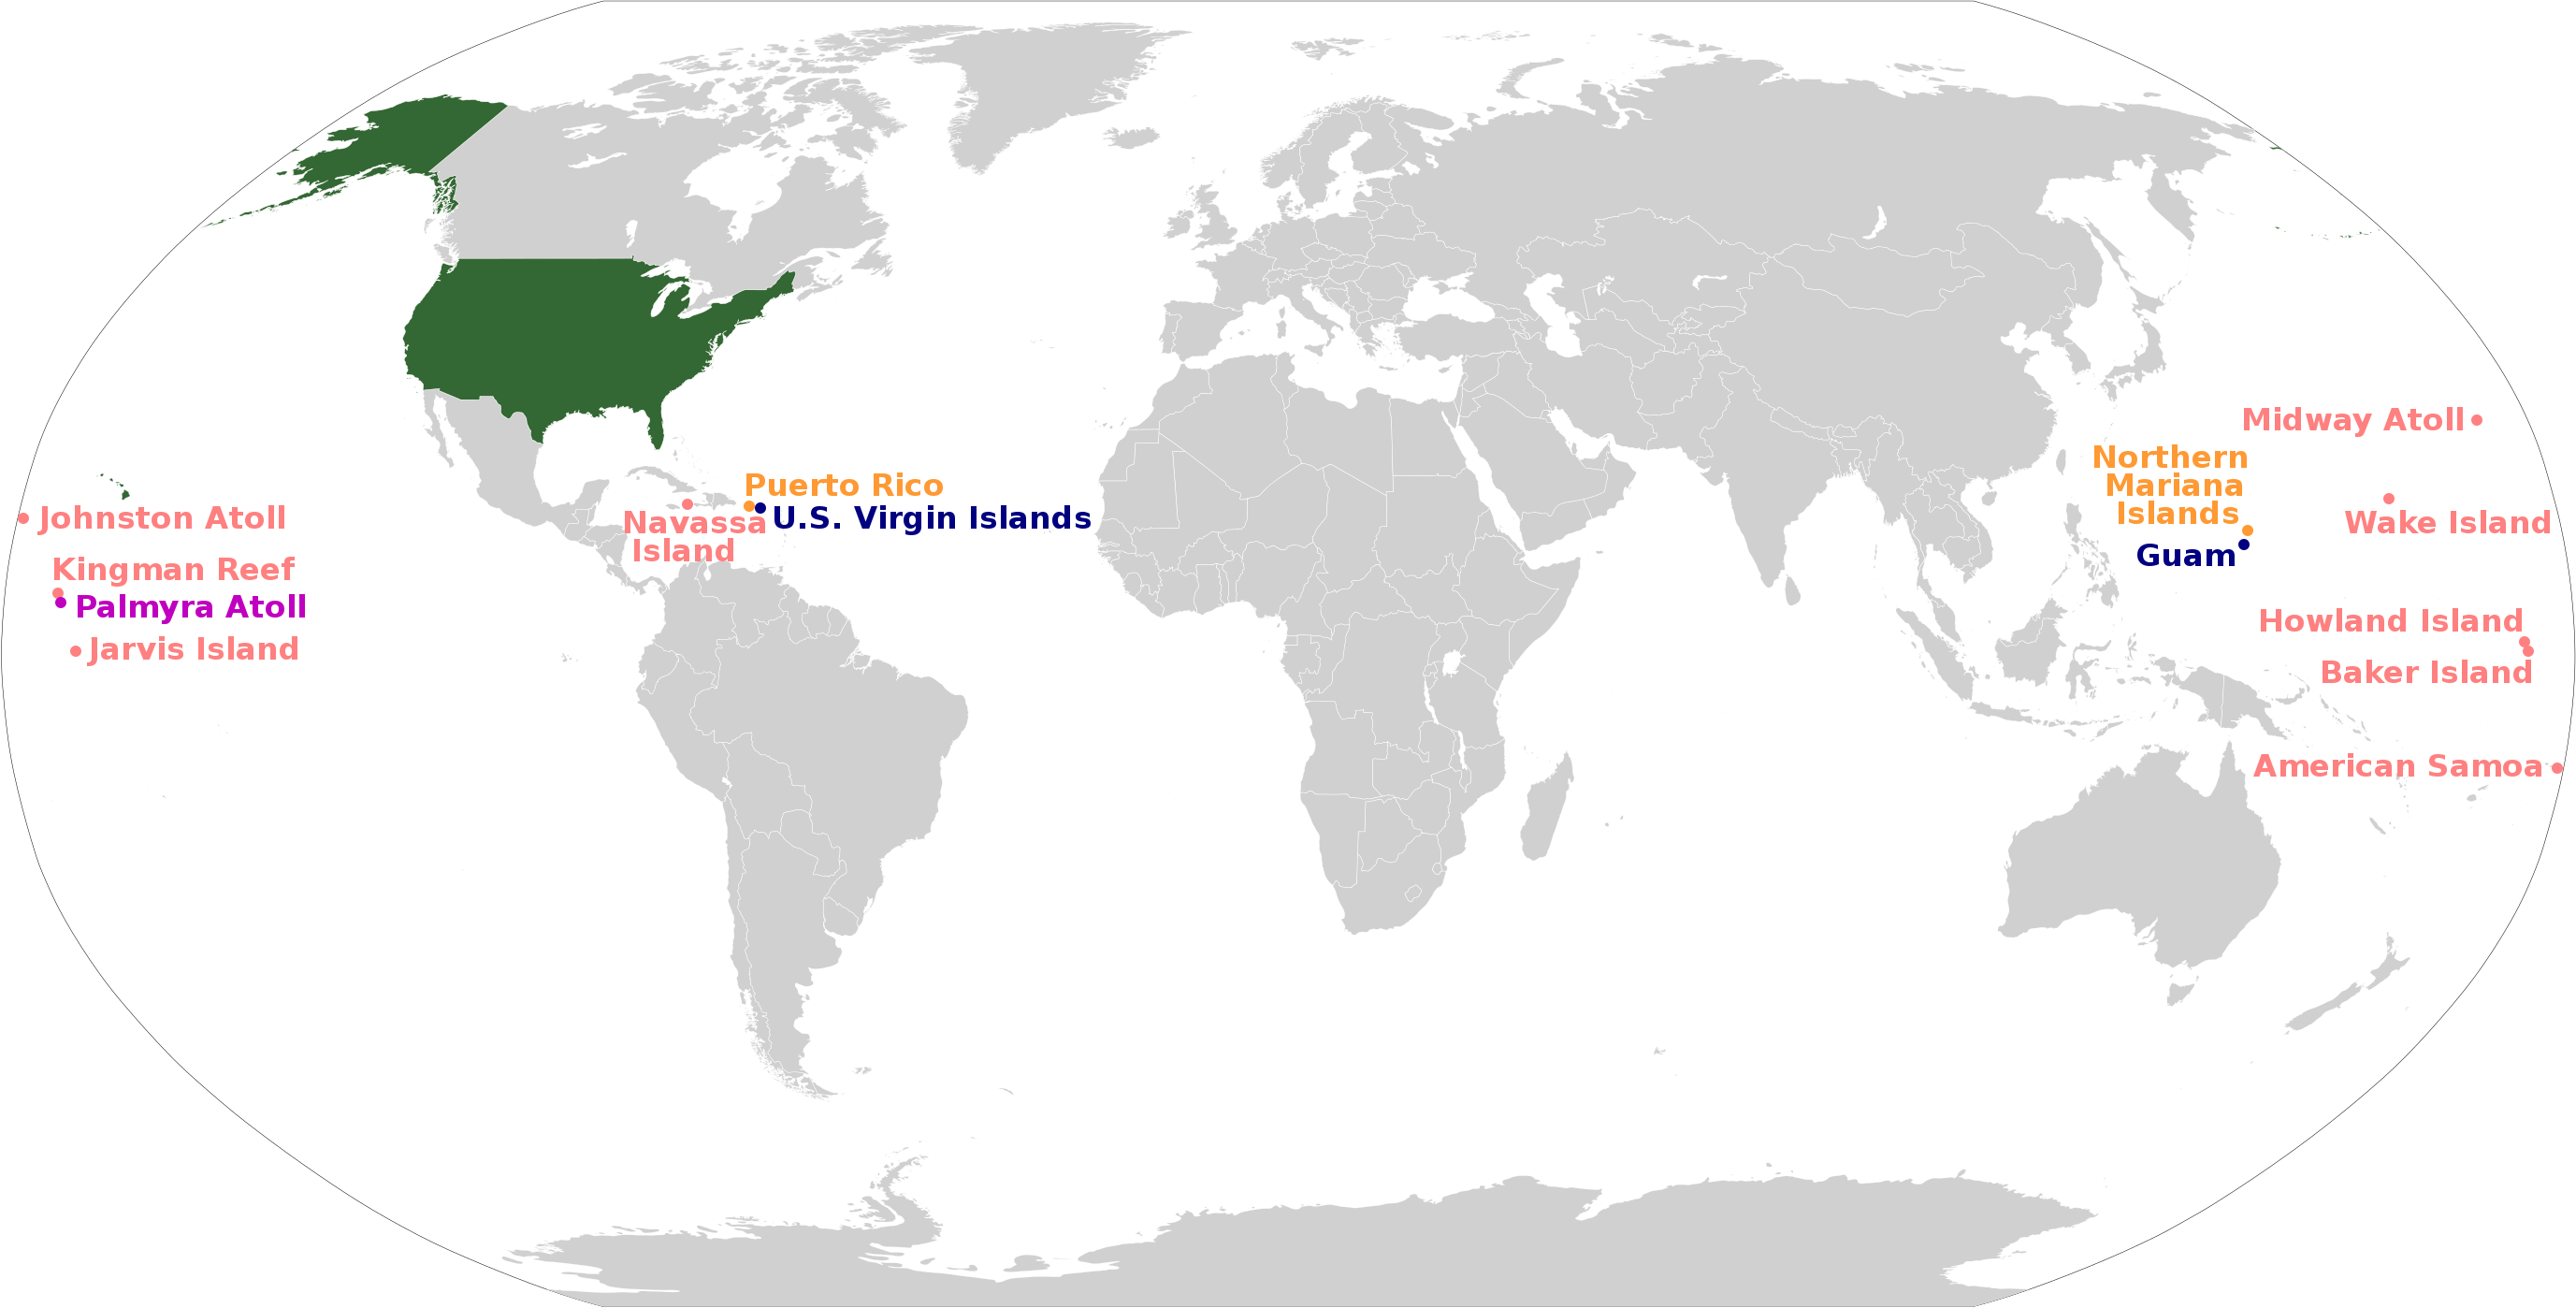 Bản đồ Nước Mỹ (Hoa Kỳ) sẽ giúp bạn khám phá những điểm đến ấn tượng tại quốc gia này. Với các thành phố lớn như New York, Los Angeles hay các bối cảnh thiên nhiên đẹp như Grand Canyon, khu định cư Pilgrim - Massachusetts, đảo Hawaii,… đảm bảo sẽ mang đến cho bạn những trải nghiệm đáng nhớ.